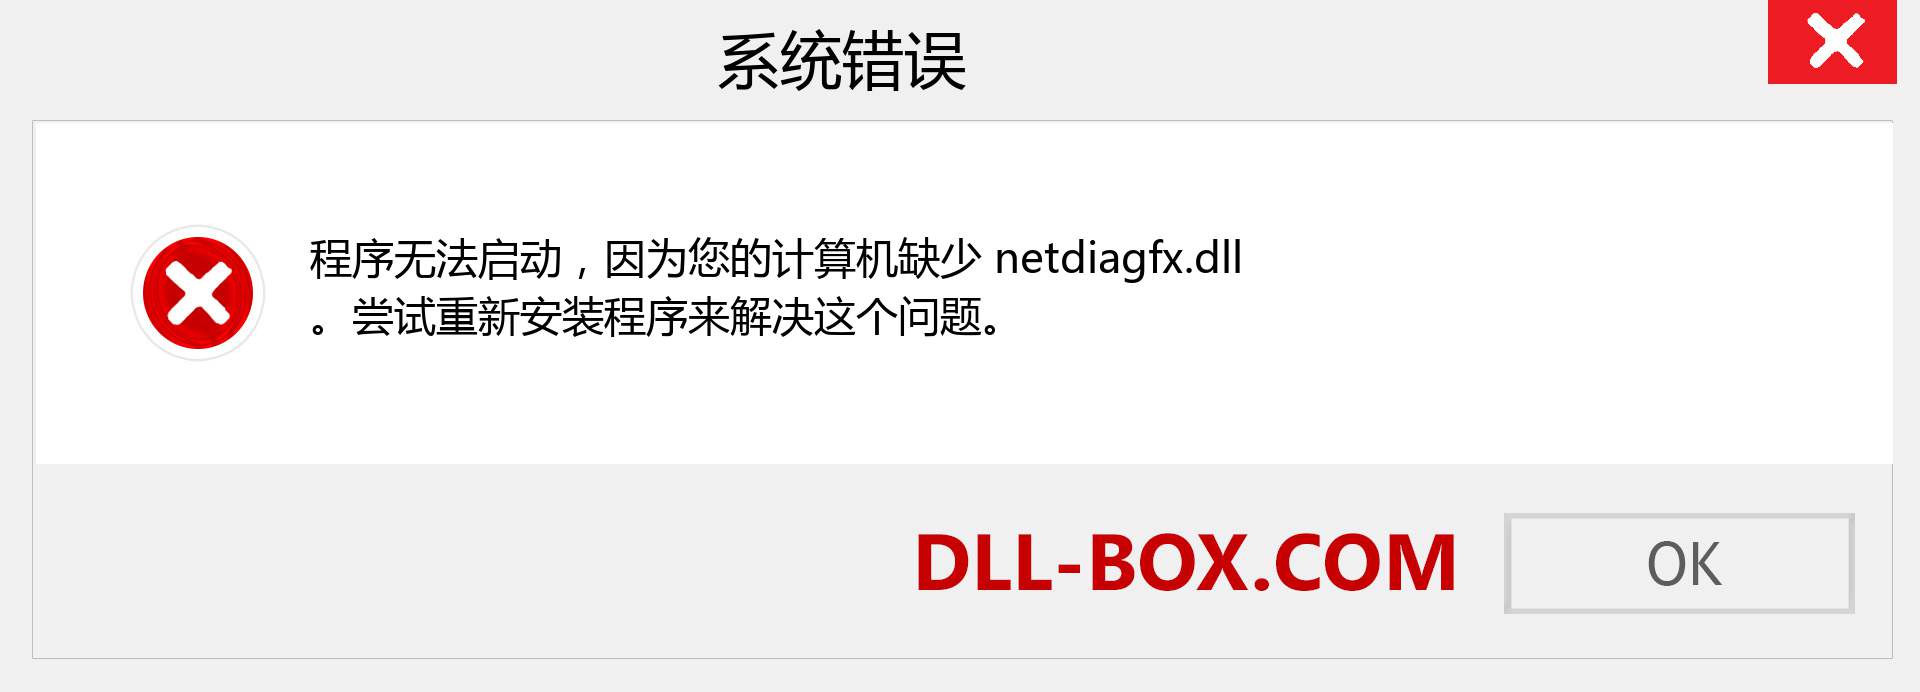 netdiagfx.dll 文件丢失？。 适用于 Windows 7、8、10 的下载 - 修复 Windows、照片、图像上的 netdiagfx dll 丢失错误